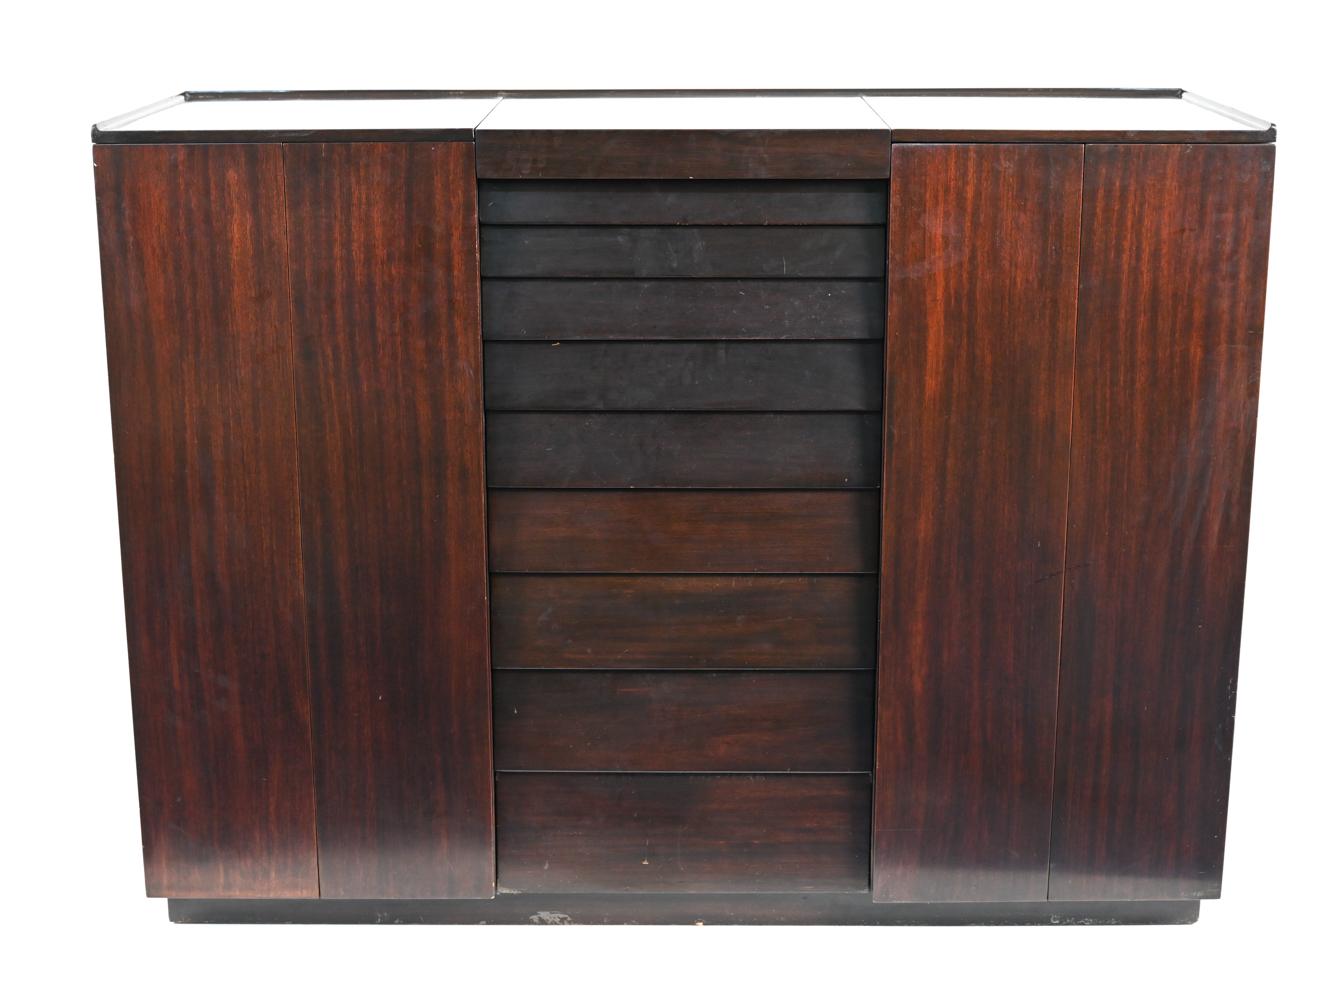 Ein schöner, funktioneller Schrank, entworfen von Edward Wormley für Dunbar, ca. Mitte der 1950er Jahre. Dieses Möbelstück aus ebonisiertem Mahagoni zeichnet sich durch zweiflügelige Schranktüren aus, die sich öffnen lassen, um ein eingebautes